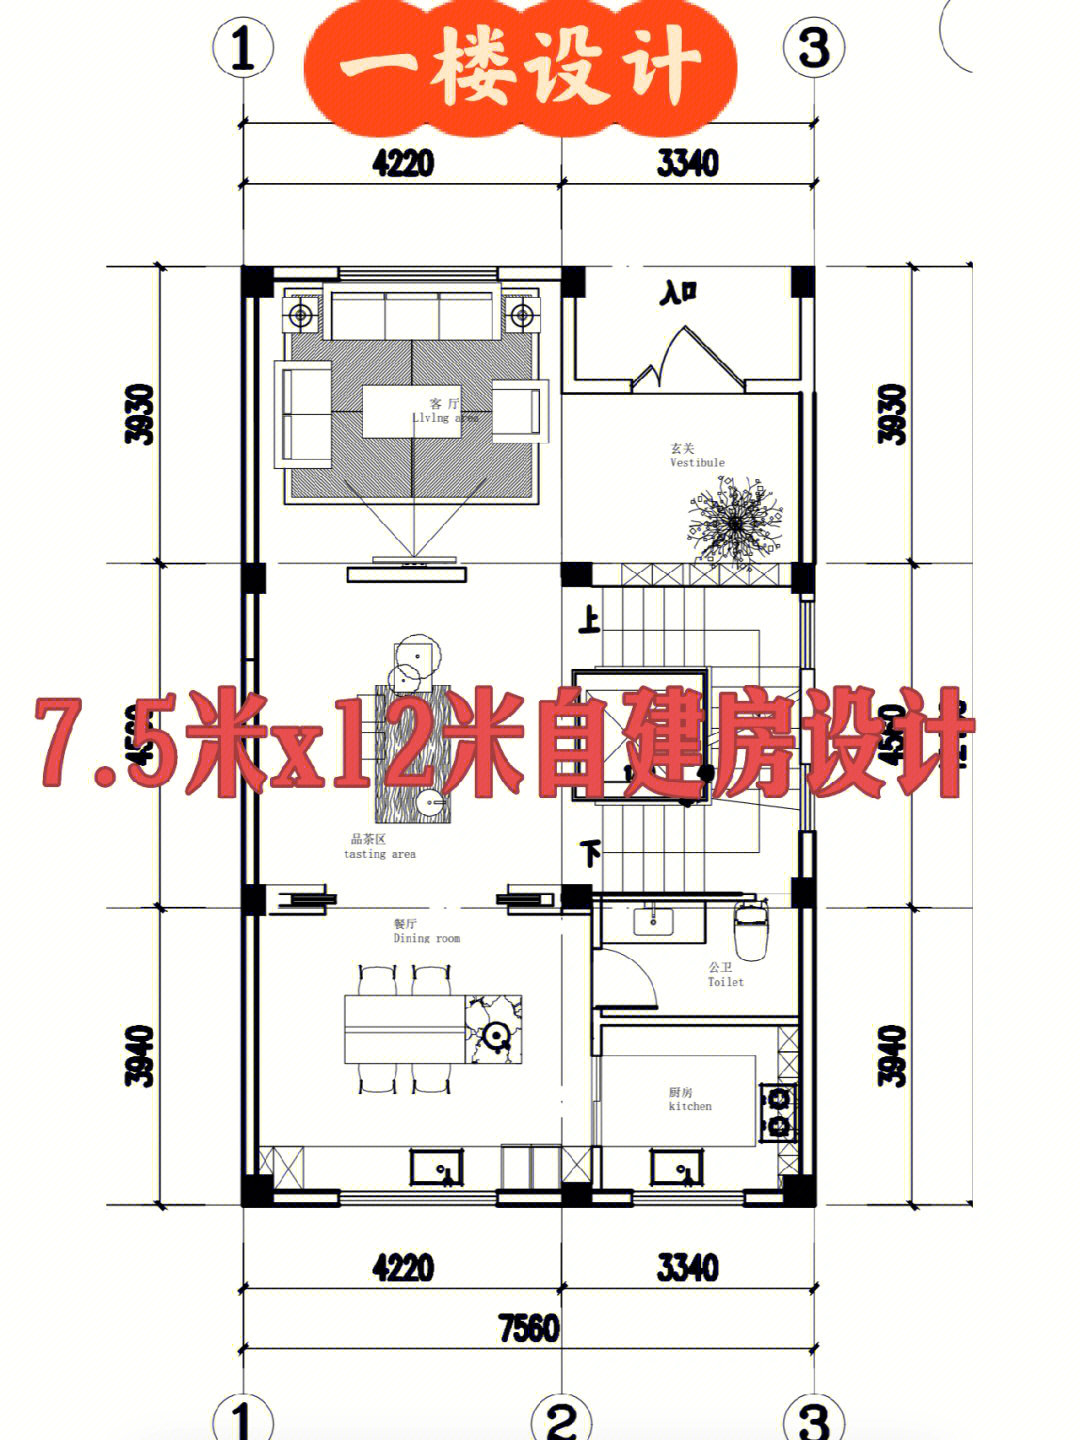 7x12米建房设计图图片